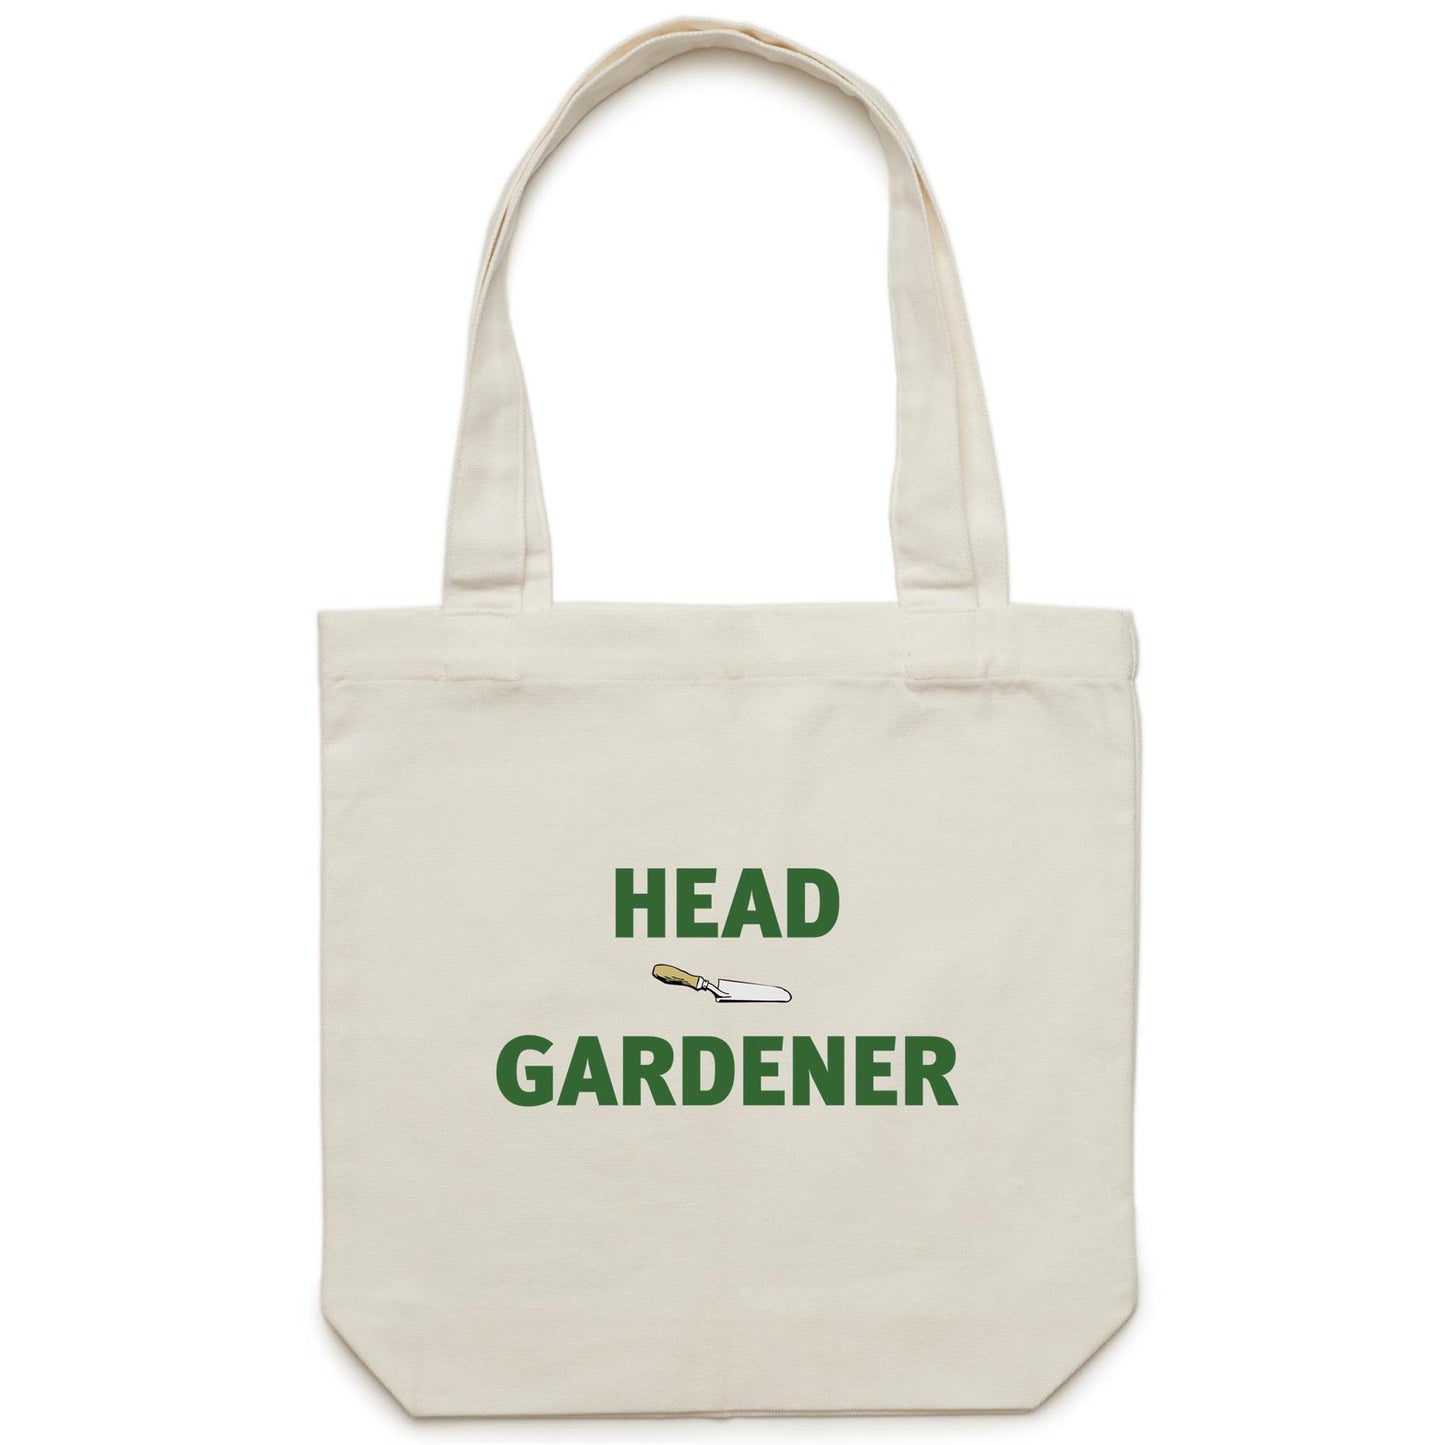 Head Gardener Canvas Totes